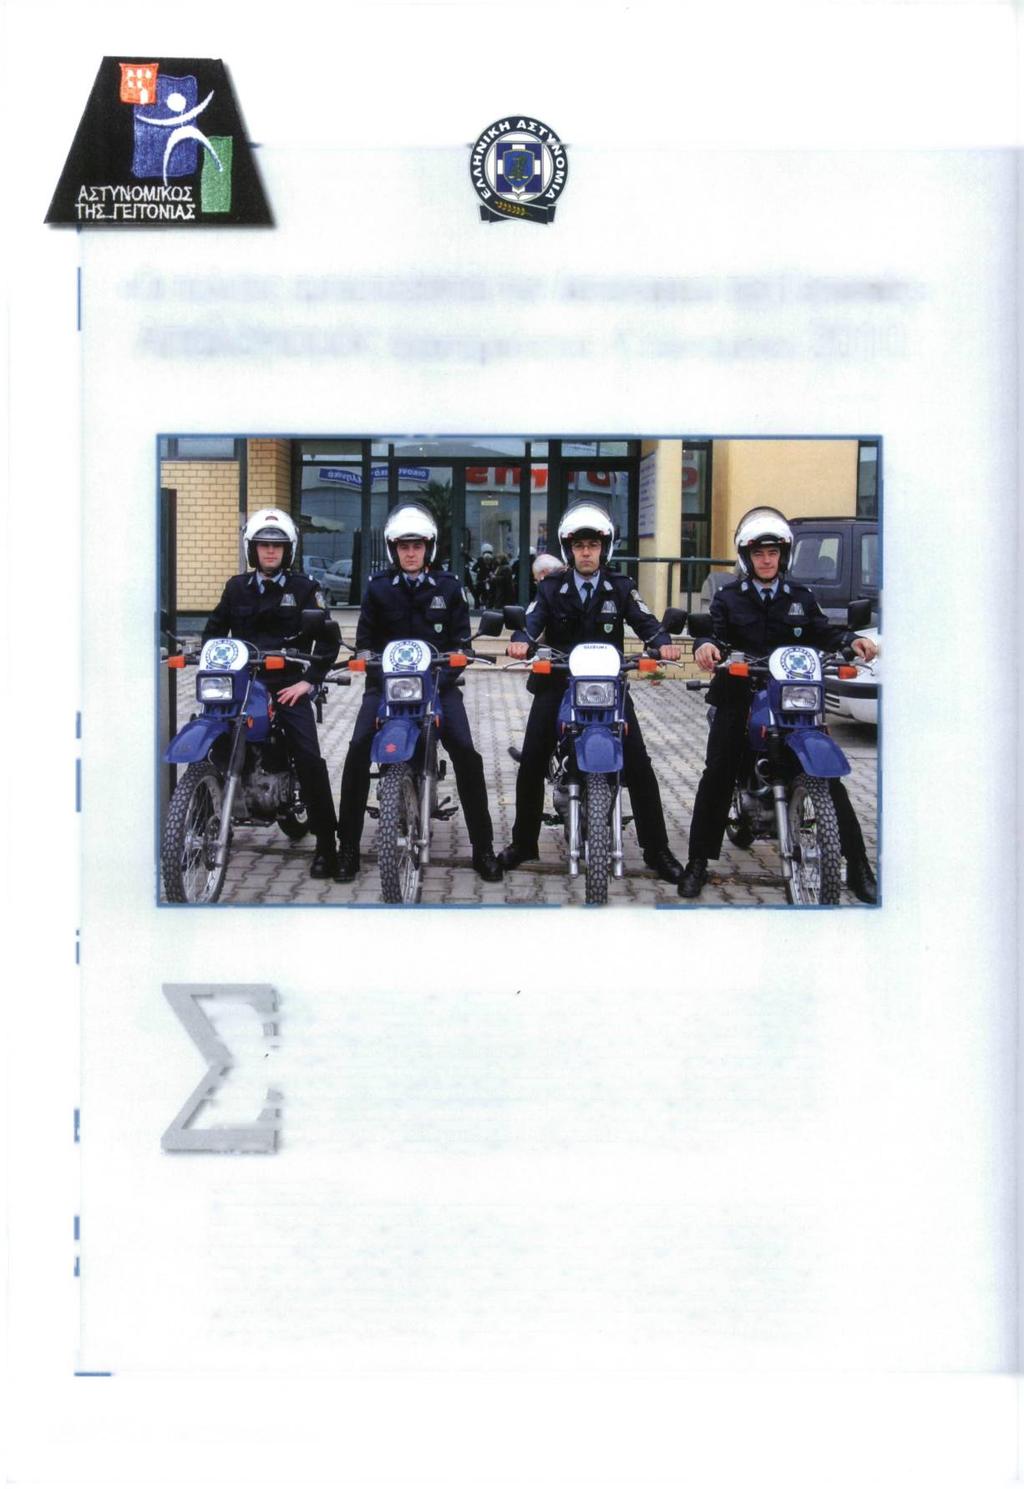 «Οι πολίτες εμπιστεύονται τον Αστυνομικό της Γειτονιάς» Απολογισμός δραστηριότητας Α πενταμήνου 2010 Σύμφωνα με τη νε'α Ανχεγκληματική Πολίτικη του Υπουργείου Προστασίας του Πολίτη για την περίοδο